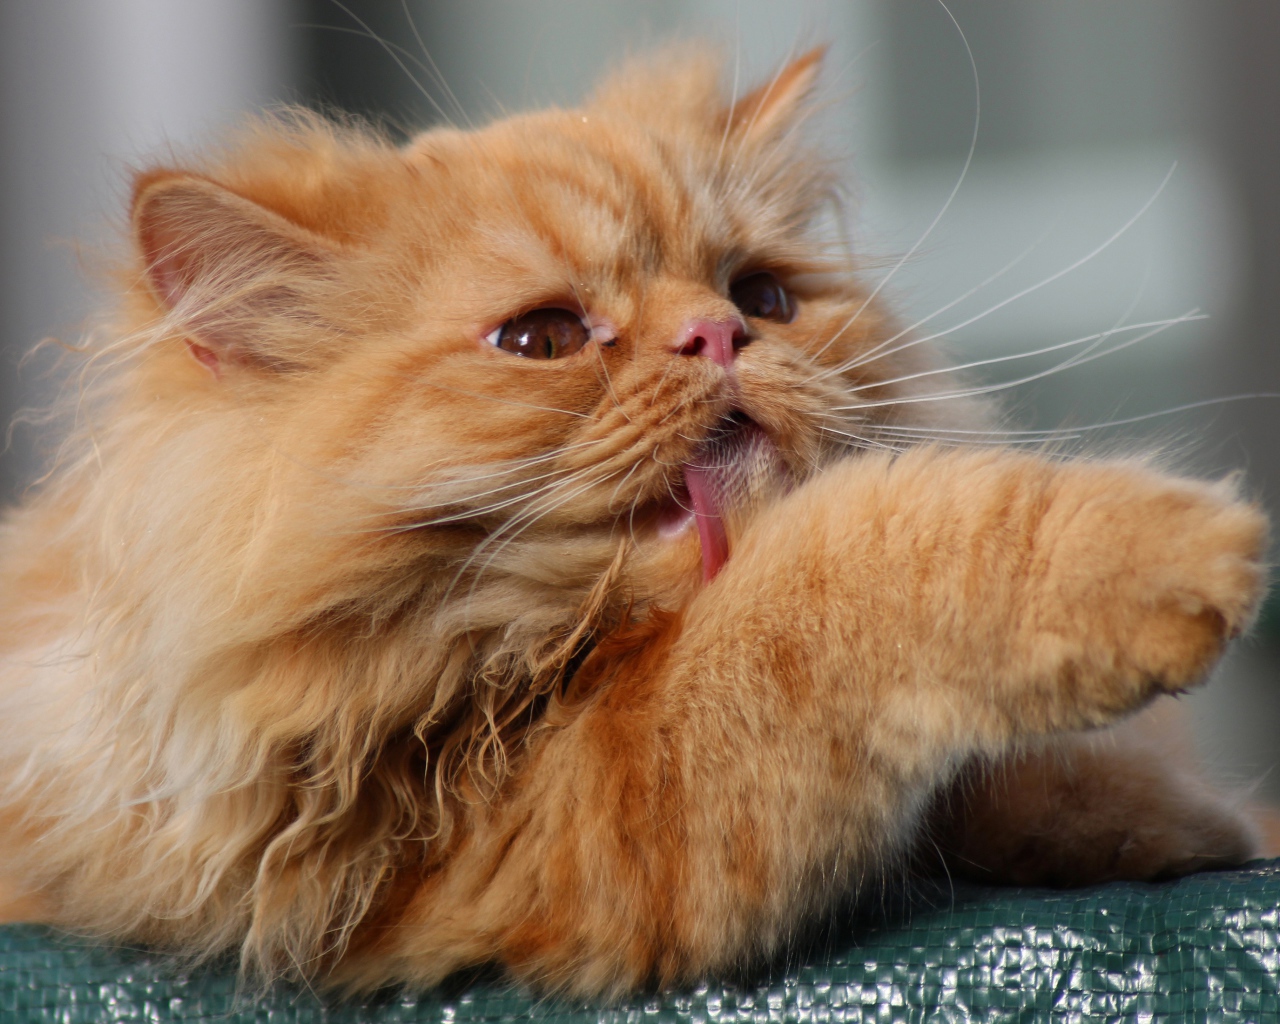 Fluffy ginger cat licks paw